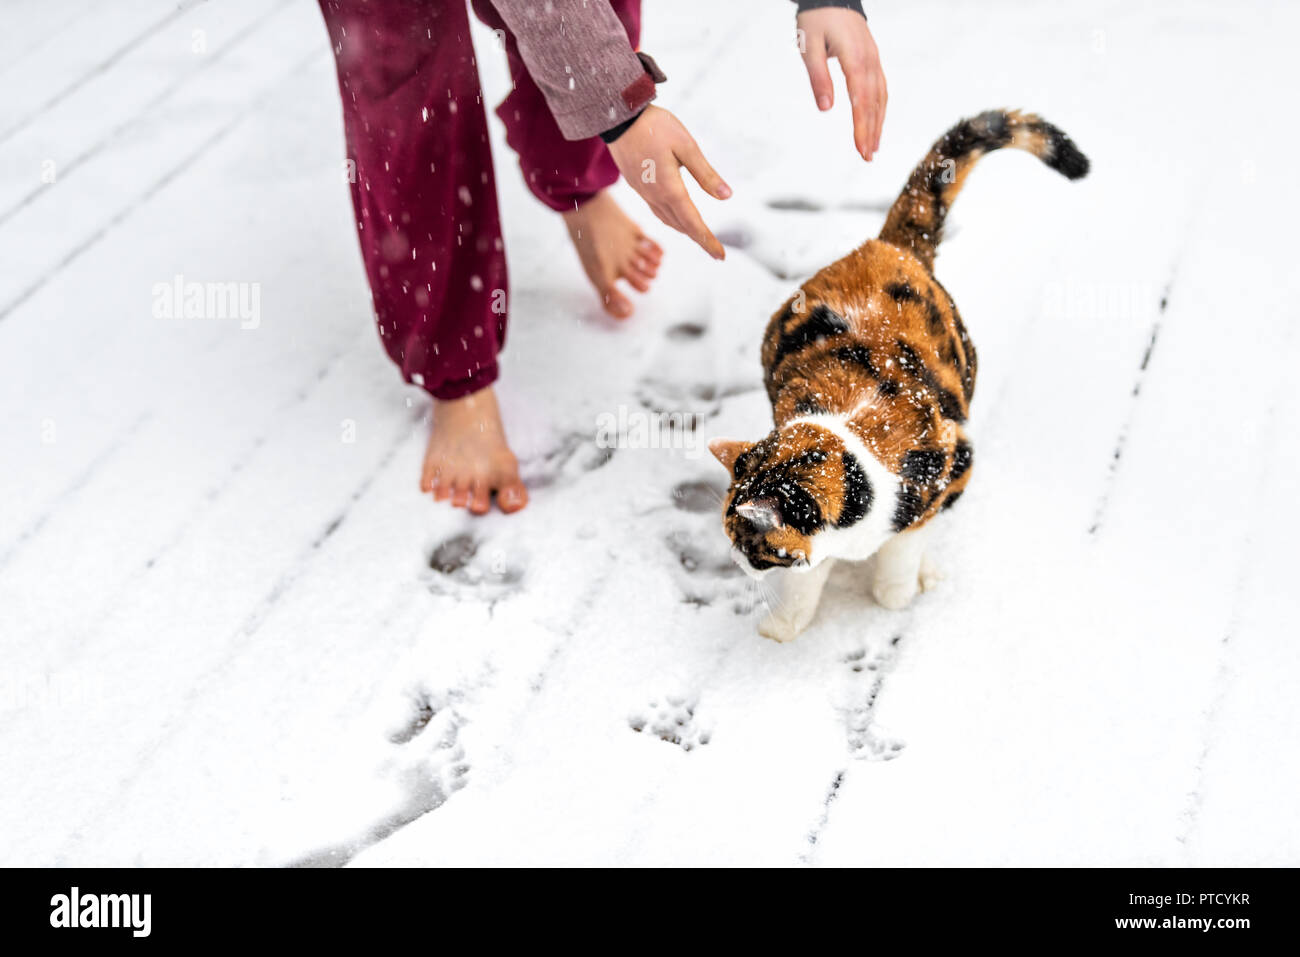 Junge Frau vermietung Calico Cat gehen von Arme, Hände draußen, im Freien auf Haus Deck, im Park im Schnee, Schnee Wetter während Schneesturm, Sturm mit Schnee Stockfoto